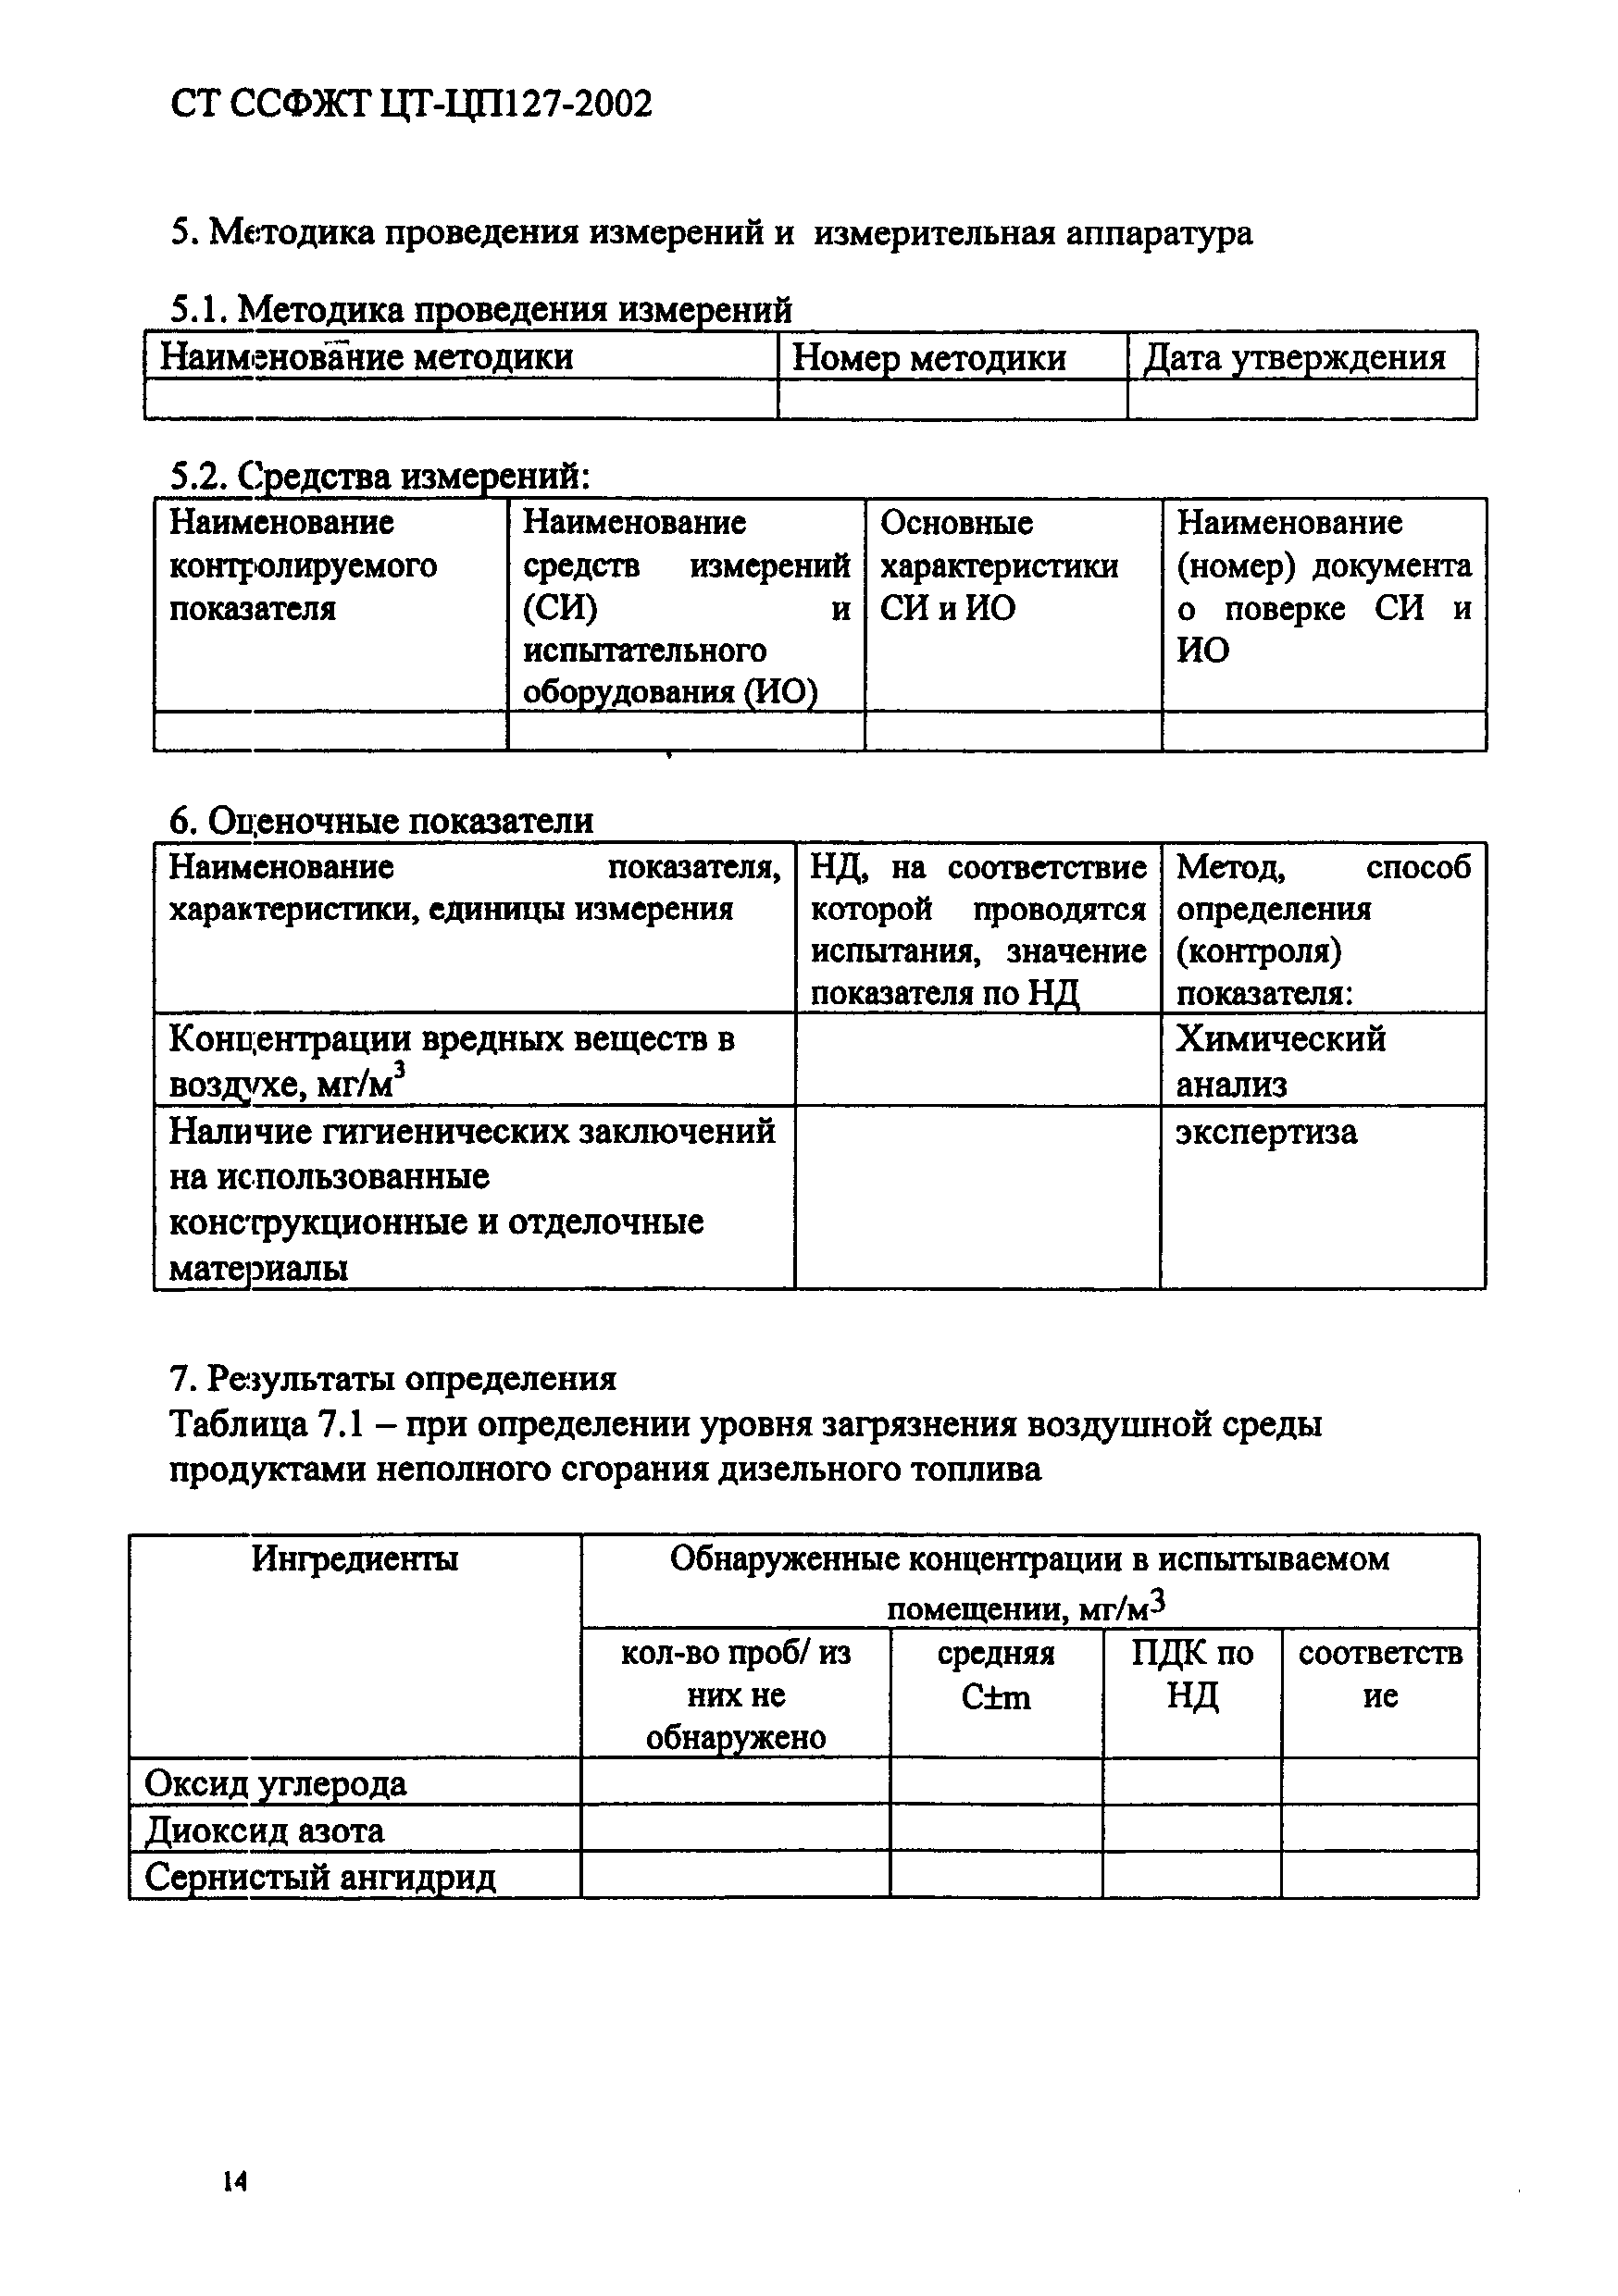 СТ ССФЖТ ЦТ-ЦП 127-2002